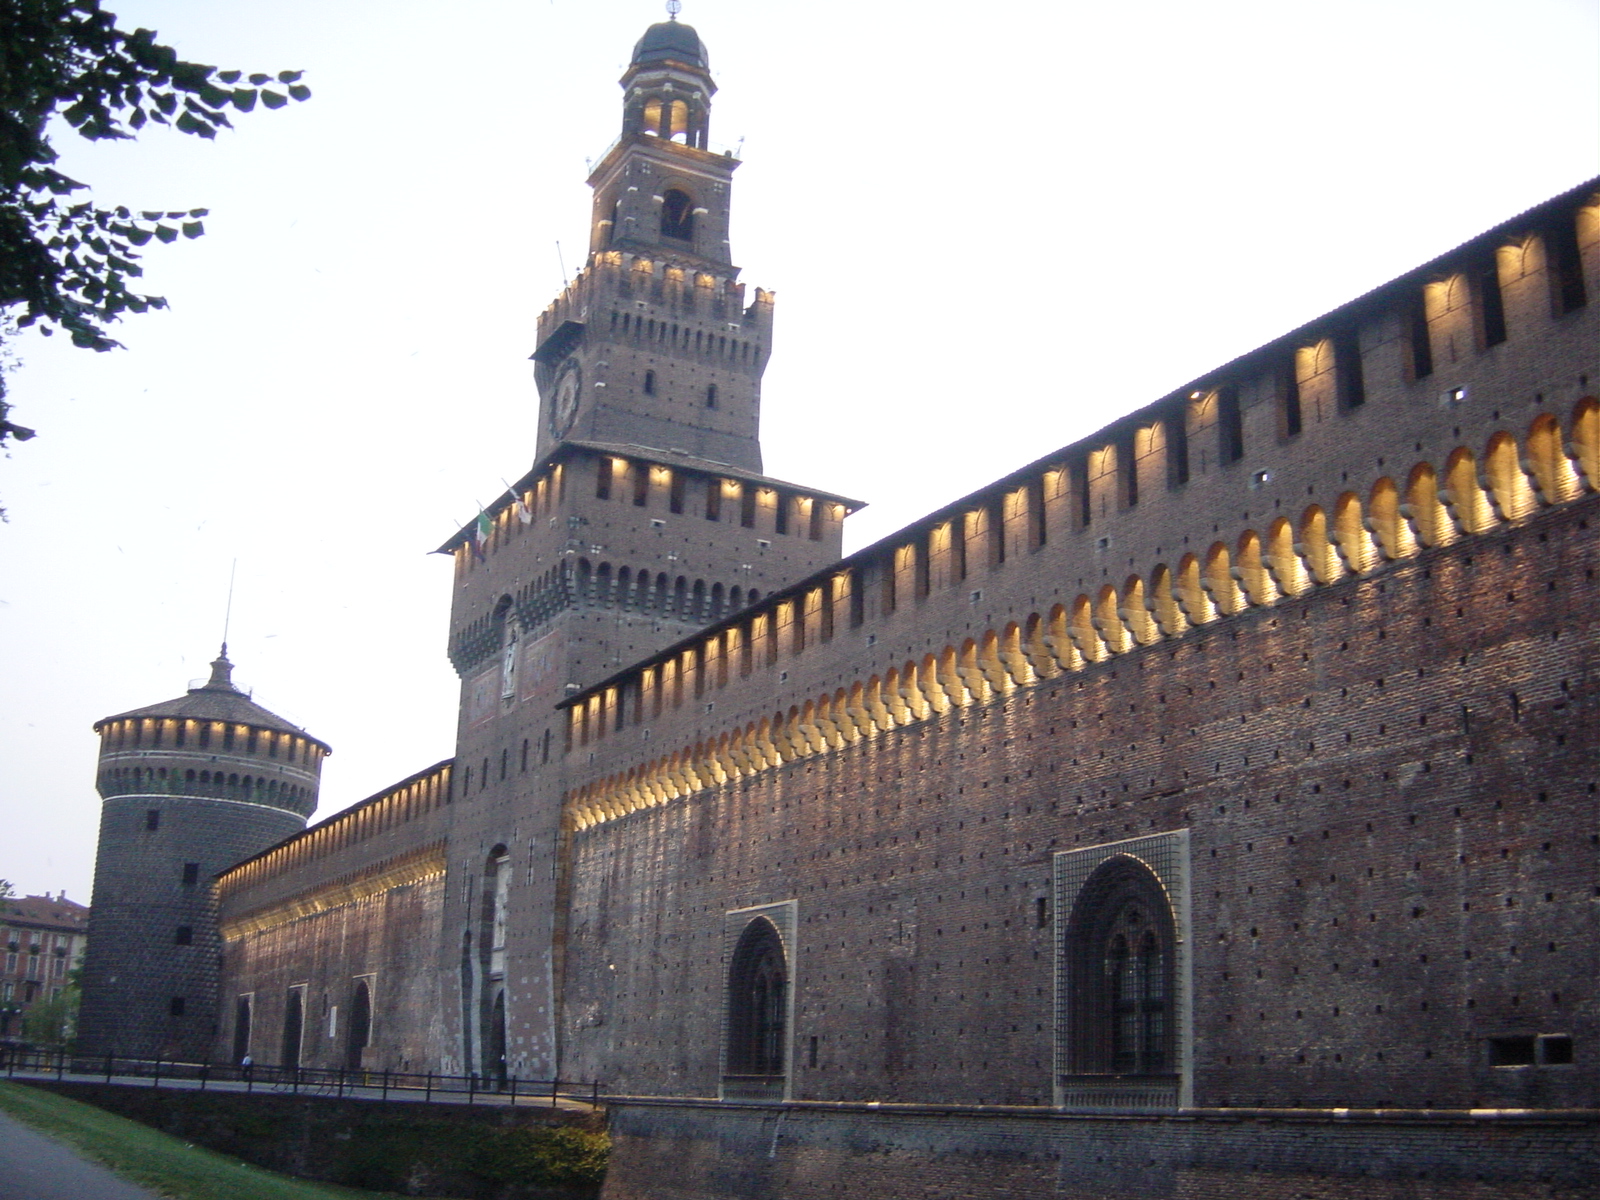 Castello Sforzesco – Italy Where